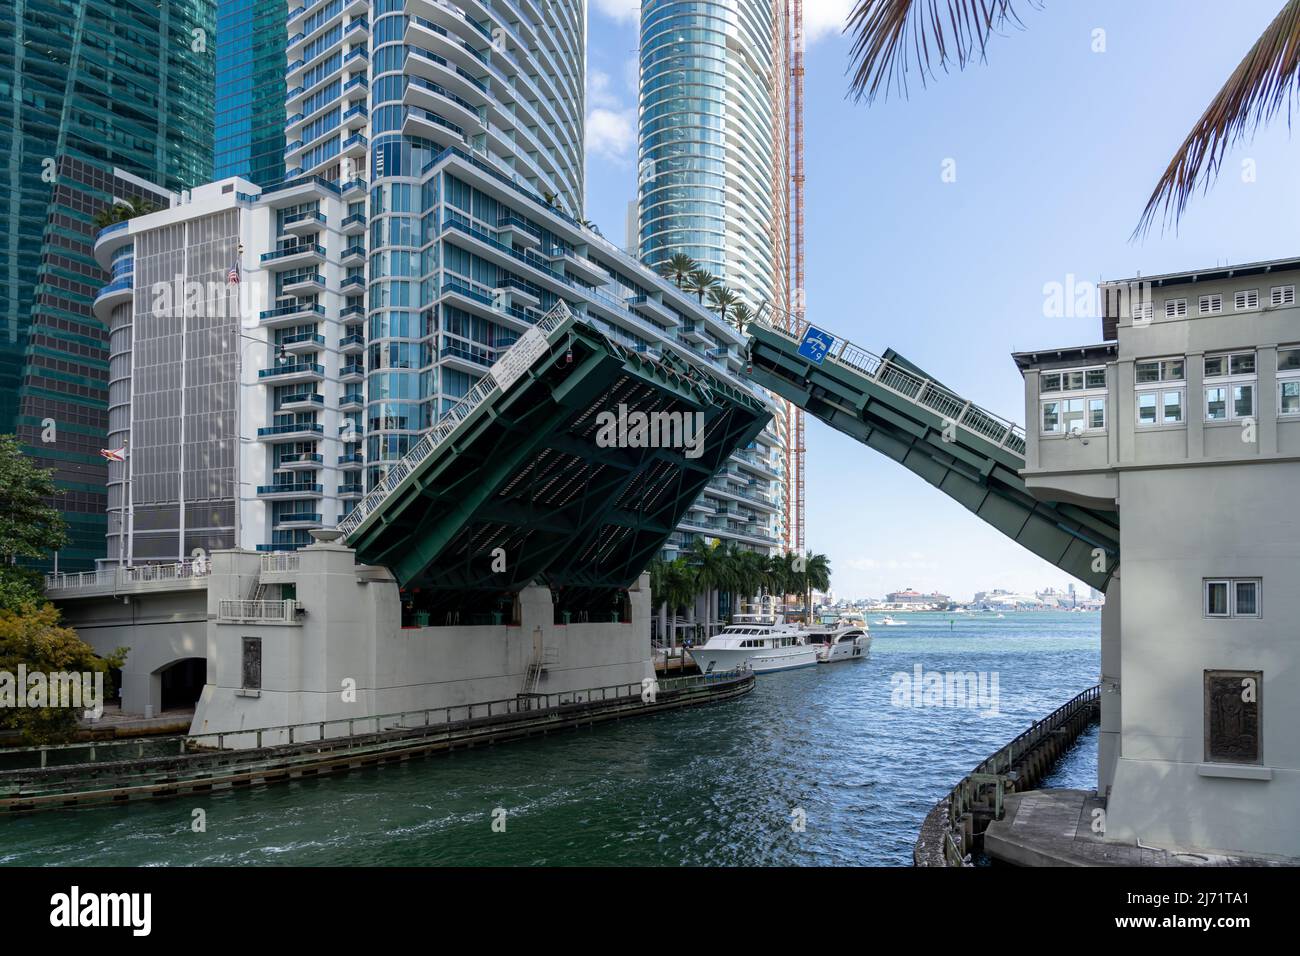 Miami, Florida, USA - January 2, 2022: Brickell Avenue Bridge in Miami. The Brickell Avenue Bridge is a bascule bridge in Downtown Miami that carries Stock Photo